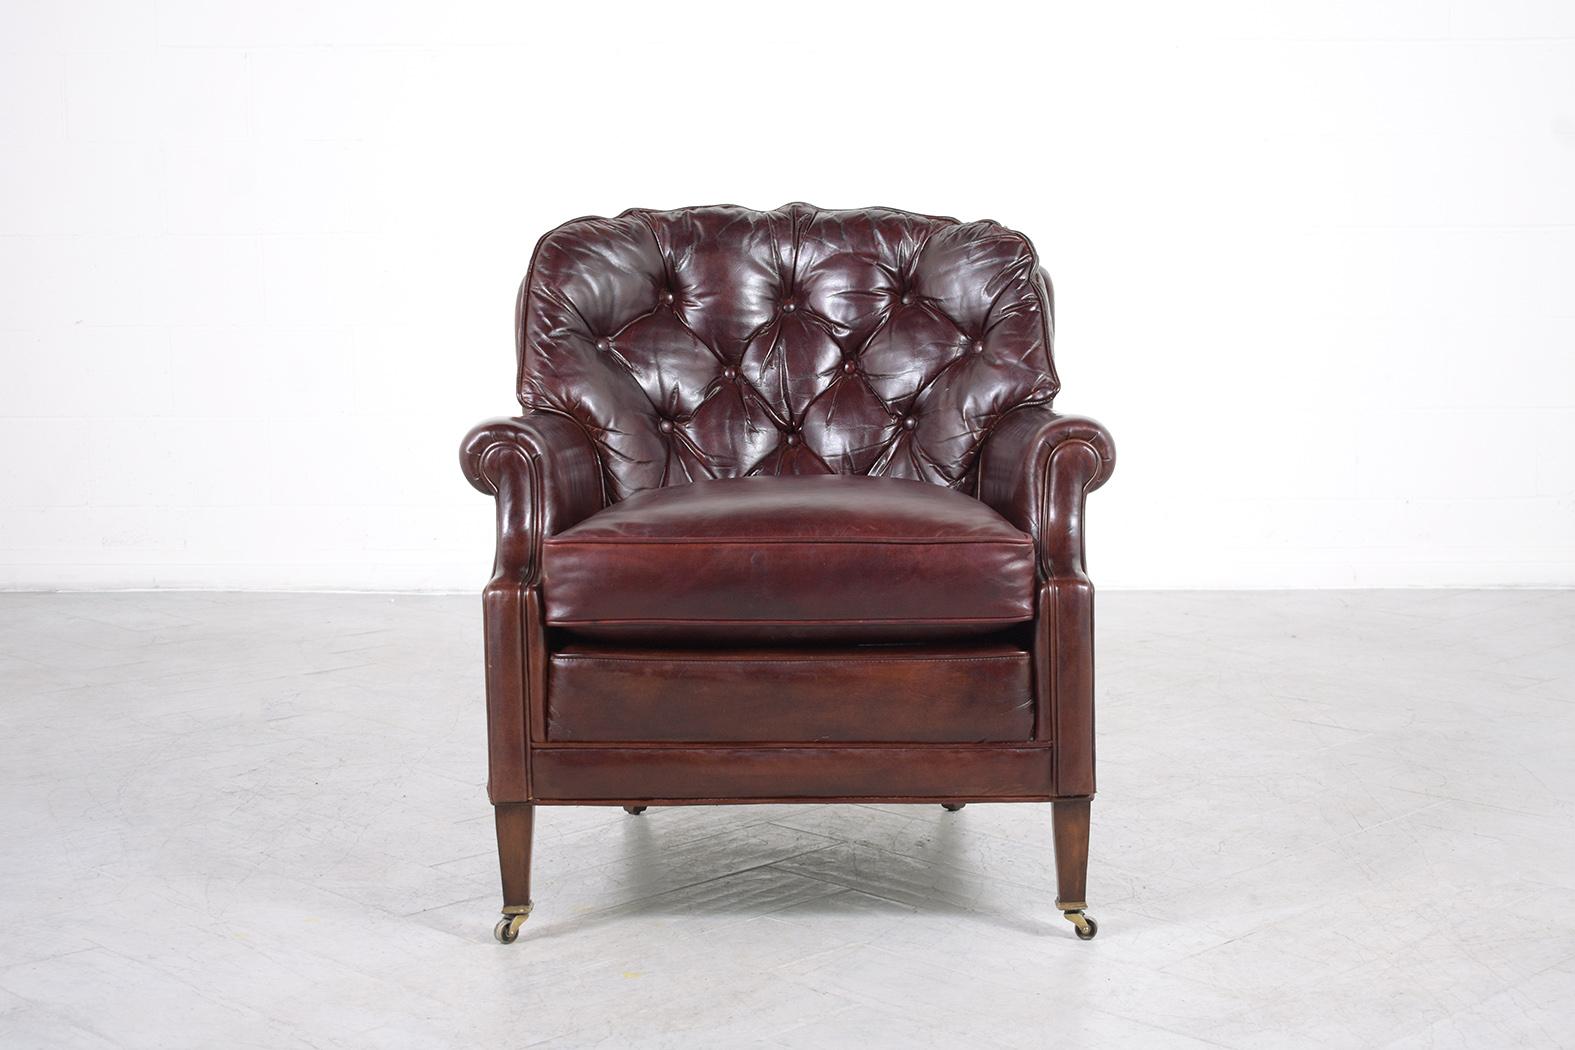 Wir stellen Ihnen unseren außergewöhnlichen antiken englischen Chesterfield-Sessel vor, der von unserem Team professioneller Handwerker fachmännisch restauriert wurde. Dieser wunderbare Sessel, dessen Gestell aus Holz gefertigt und mit hochwertigem